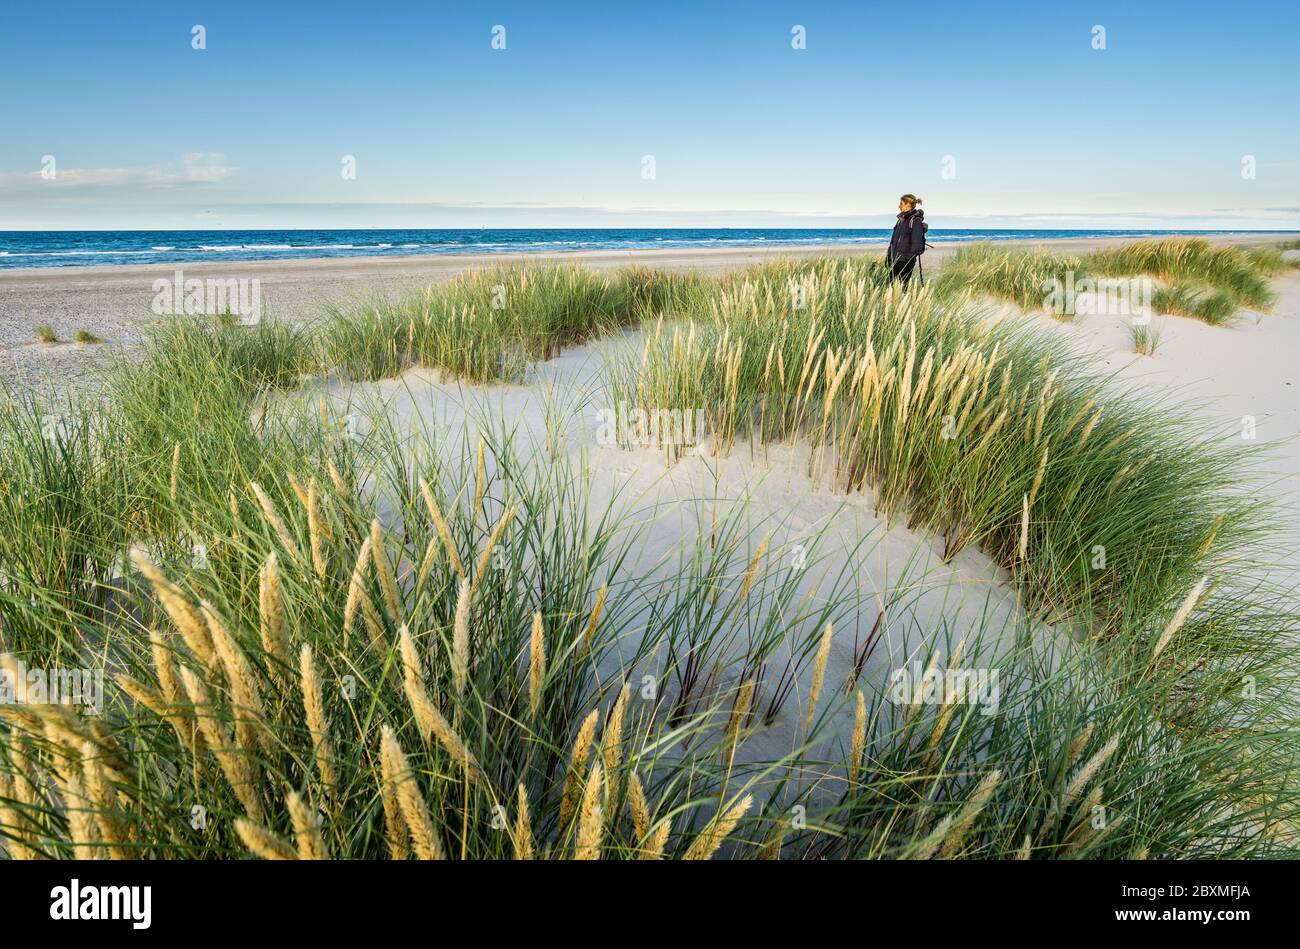 Junge Frau, die in Küstensanddünengras am Strand der Nordsee in sanftem Sonnenaufgang beim Sonnenuntergang wandert. Skagen Nordstrand, Dänemark. Skagerrak, Kattegat. Stockfoto